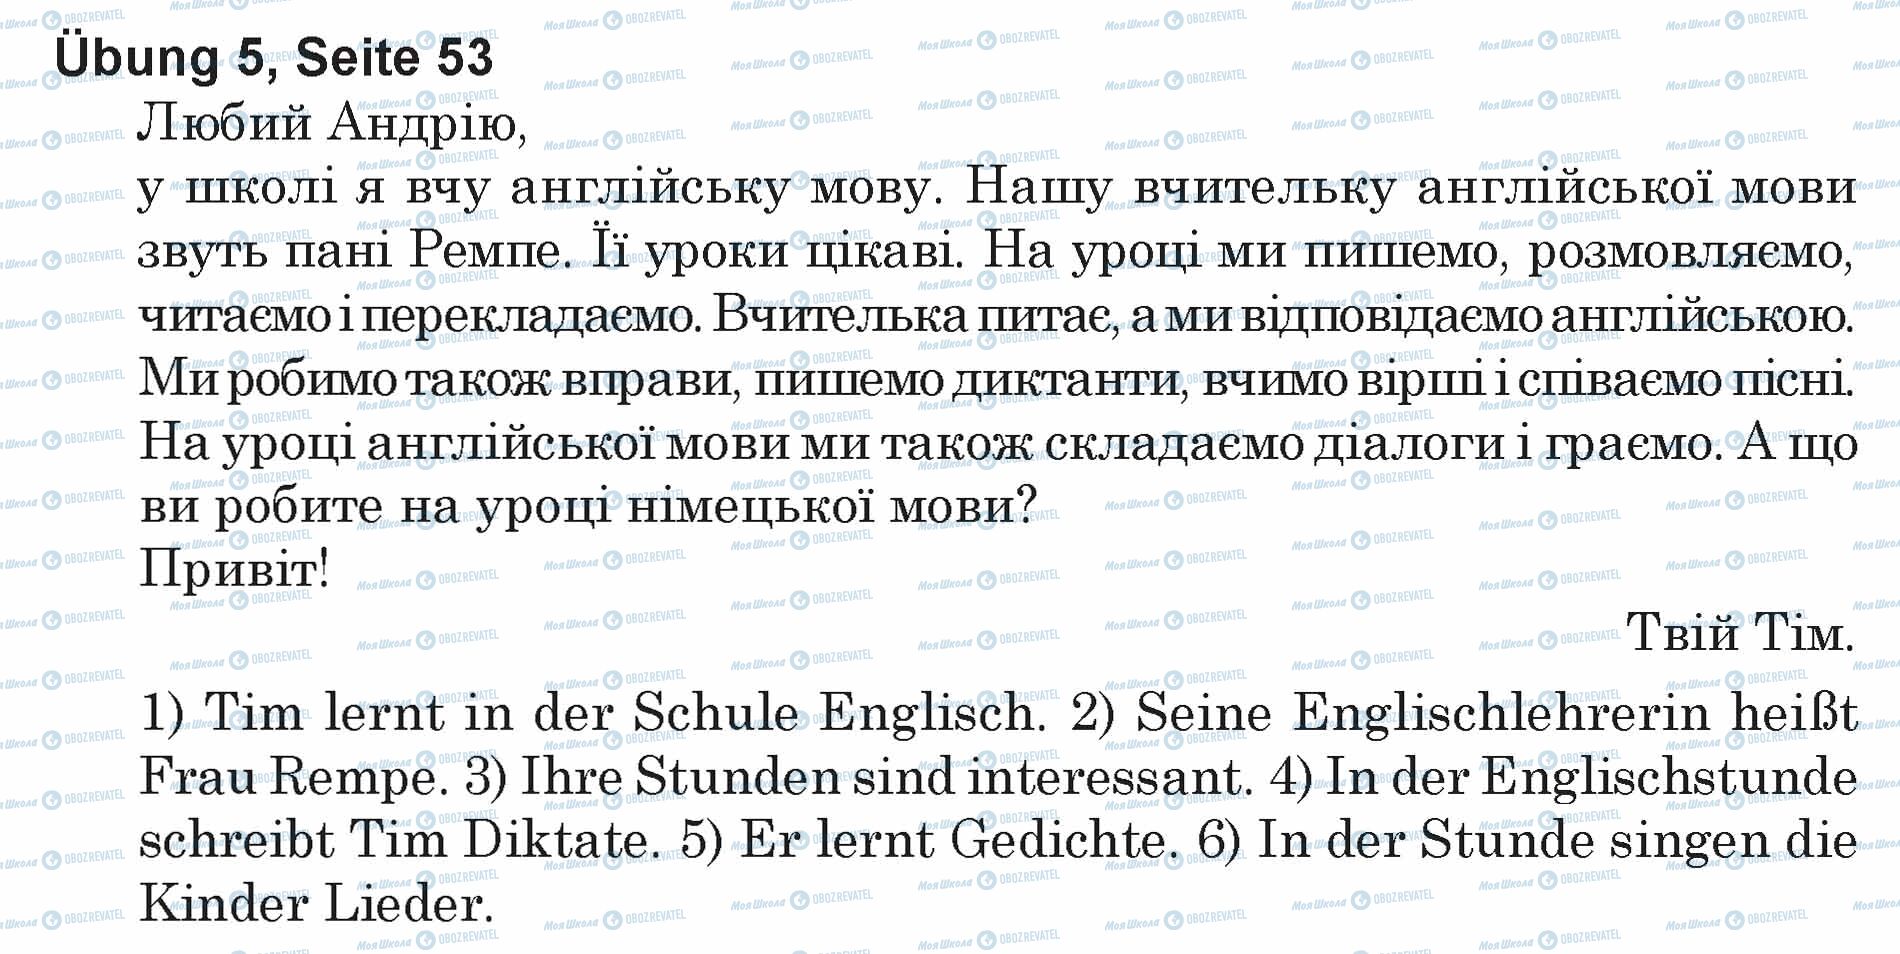 ГДЗ Немецкий язык 5 класс страница Ubung 5, Seite 53